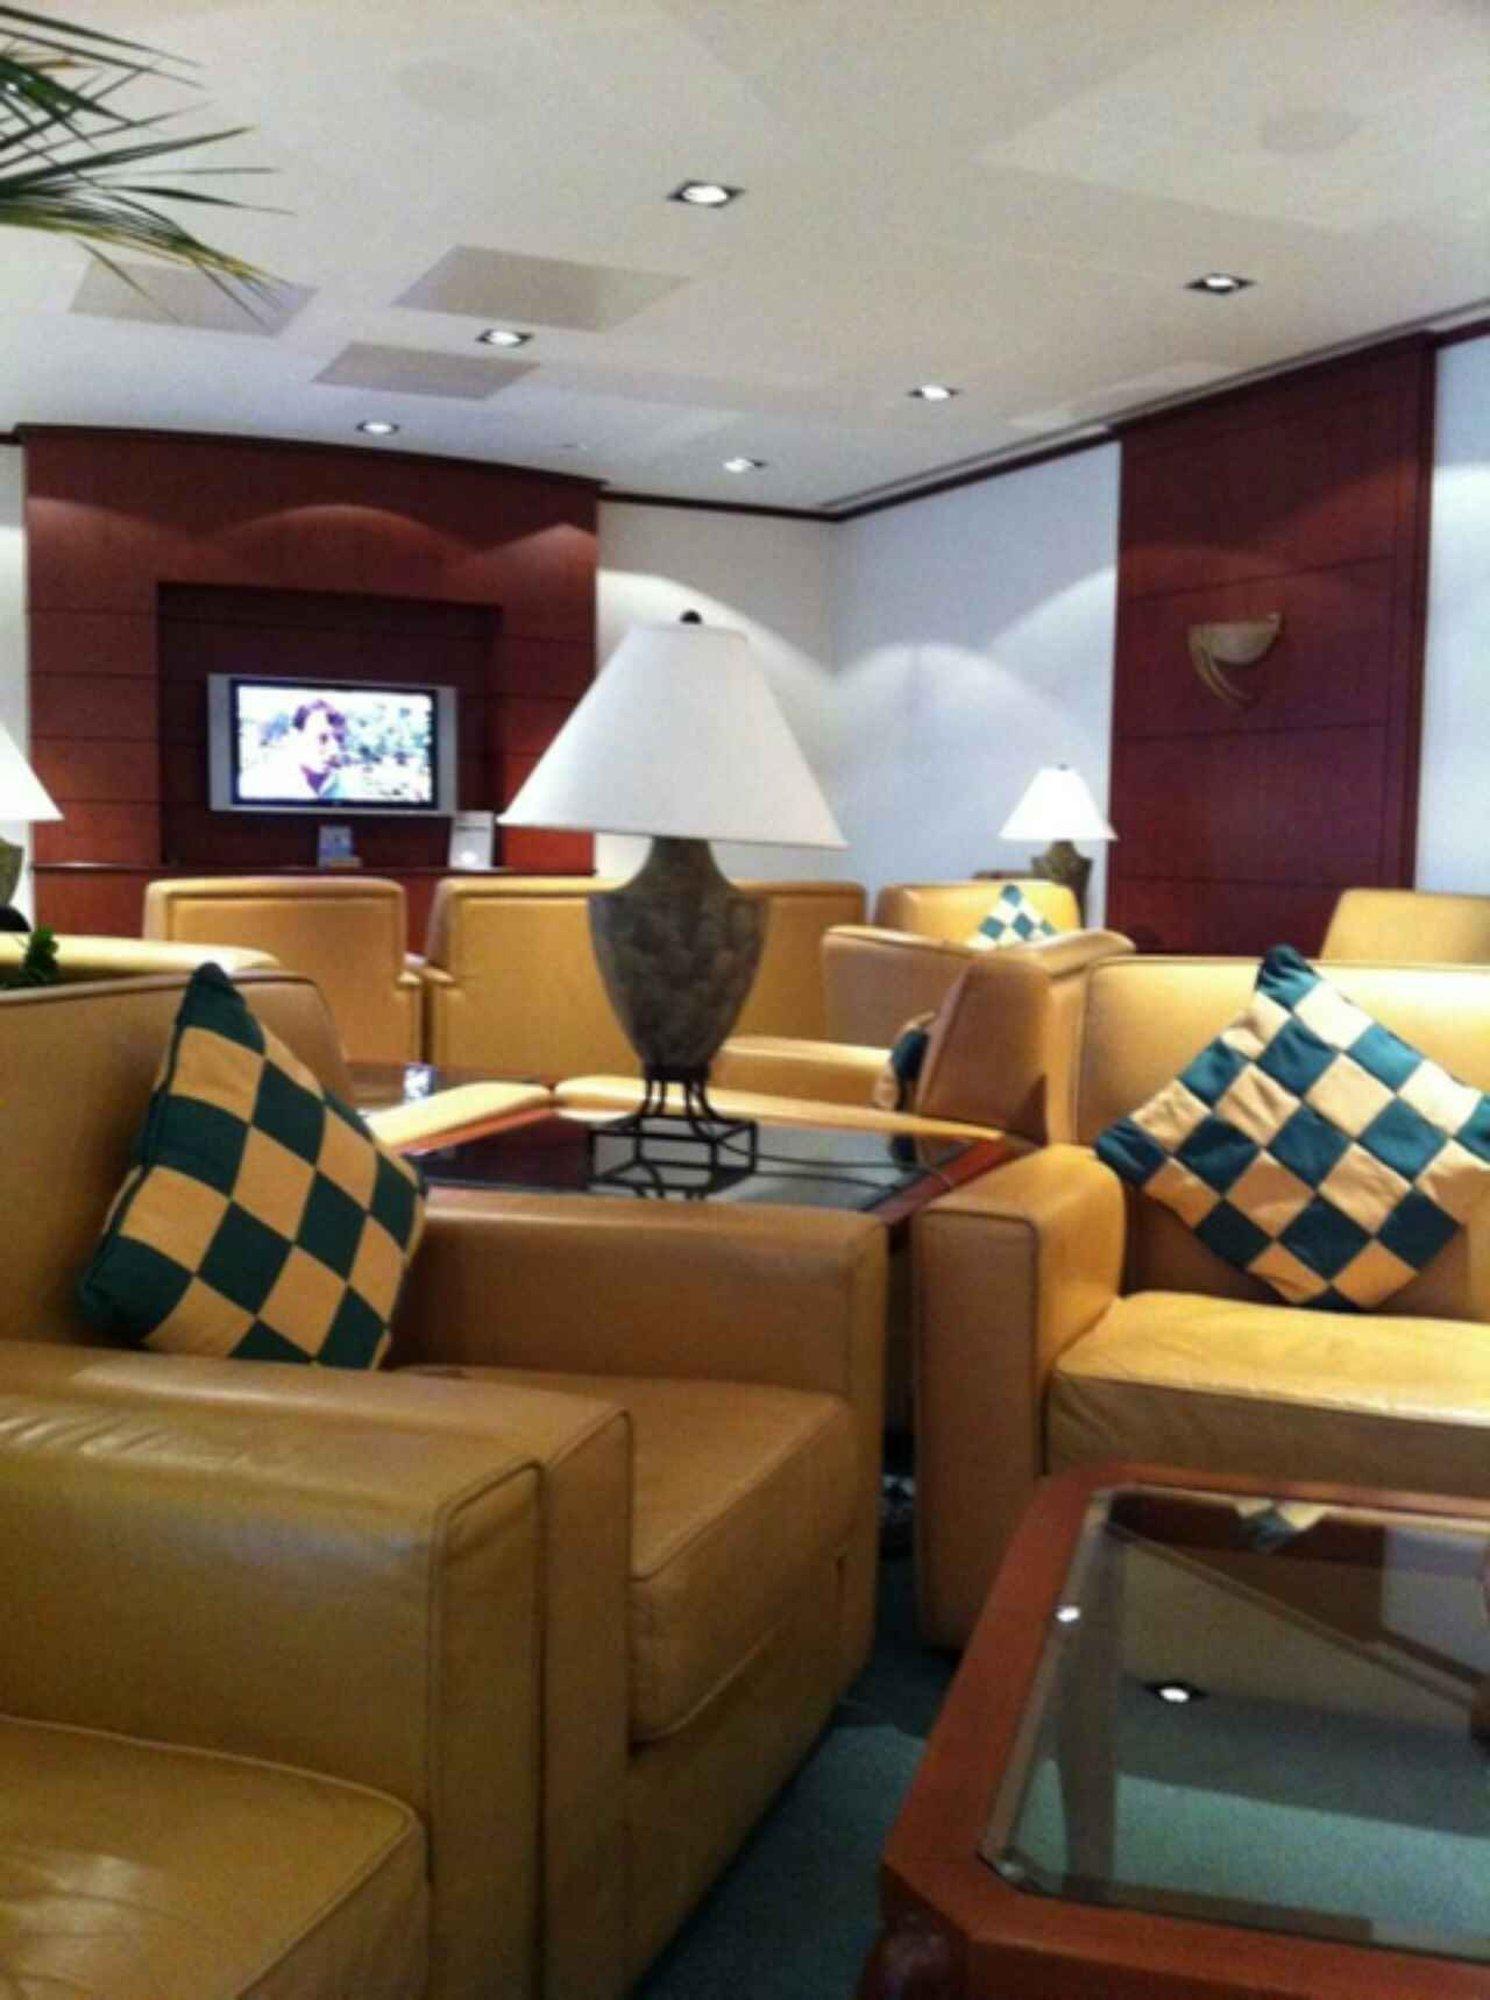 The Emirates Lounge image 7 of 10